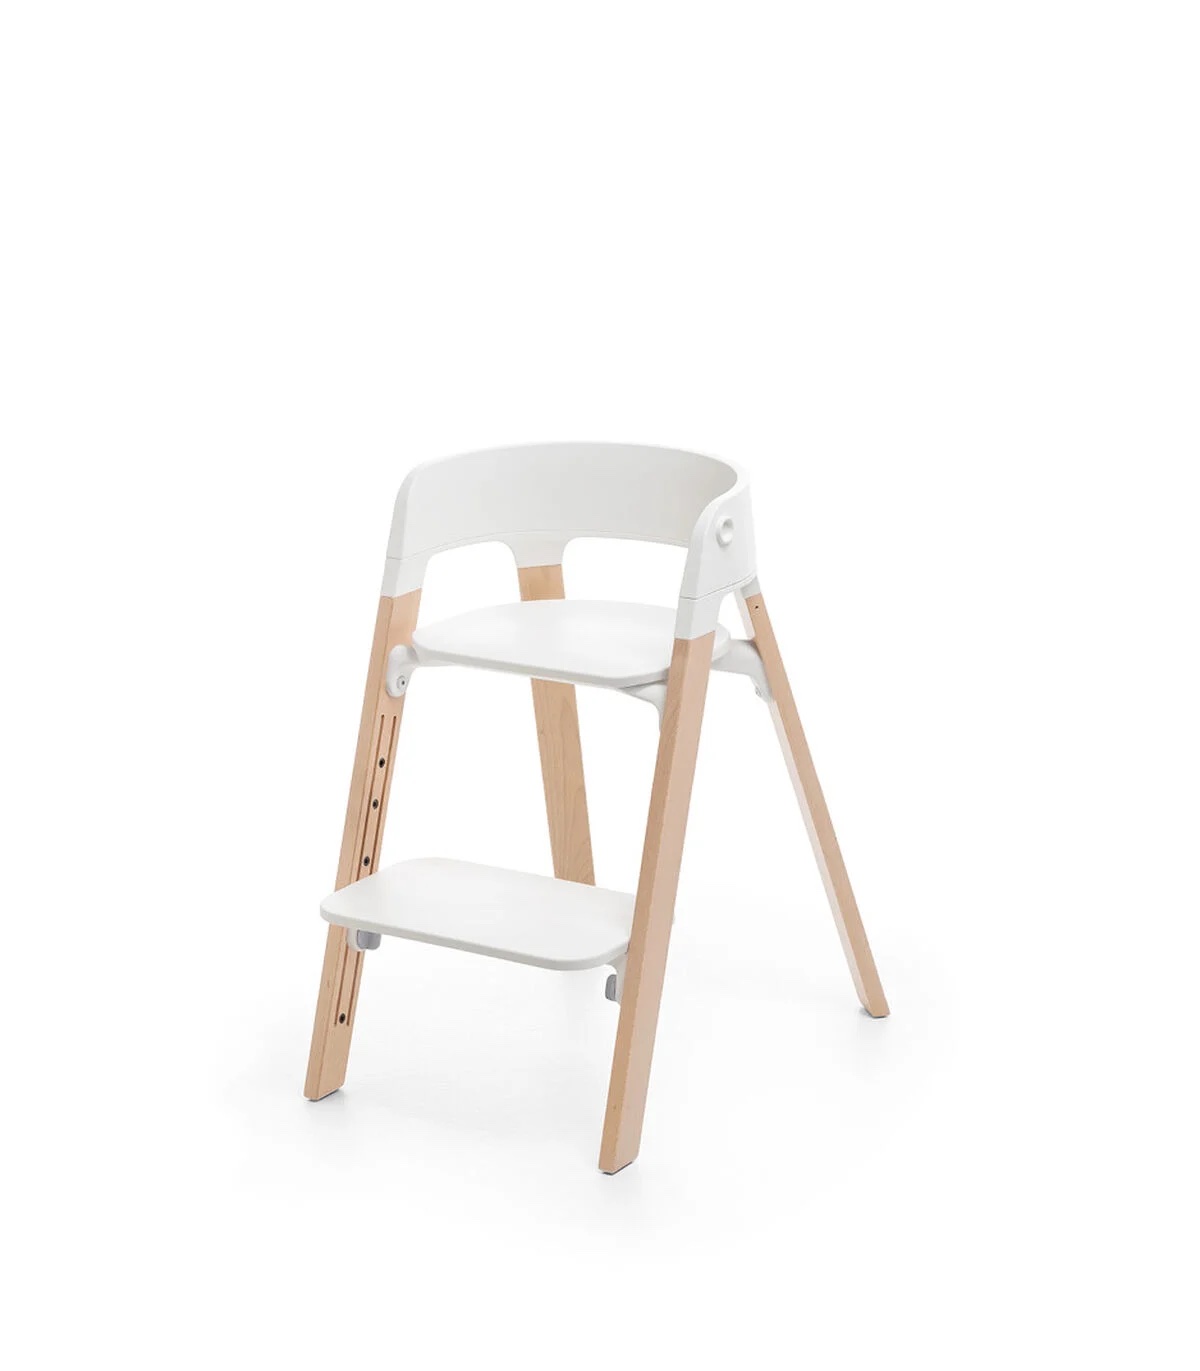 Stokke-steps-bois-blanc-chaise-haute-bébé-enfant